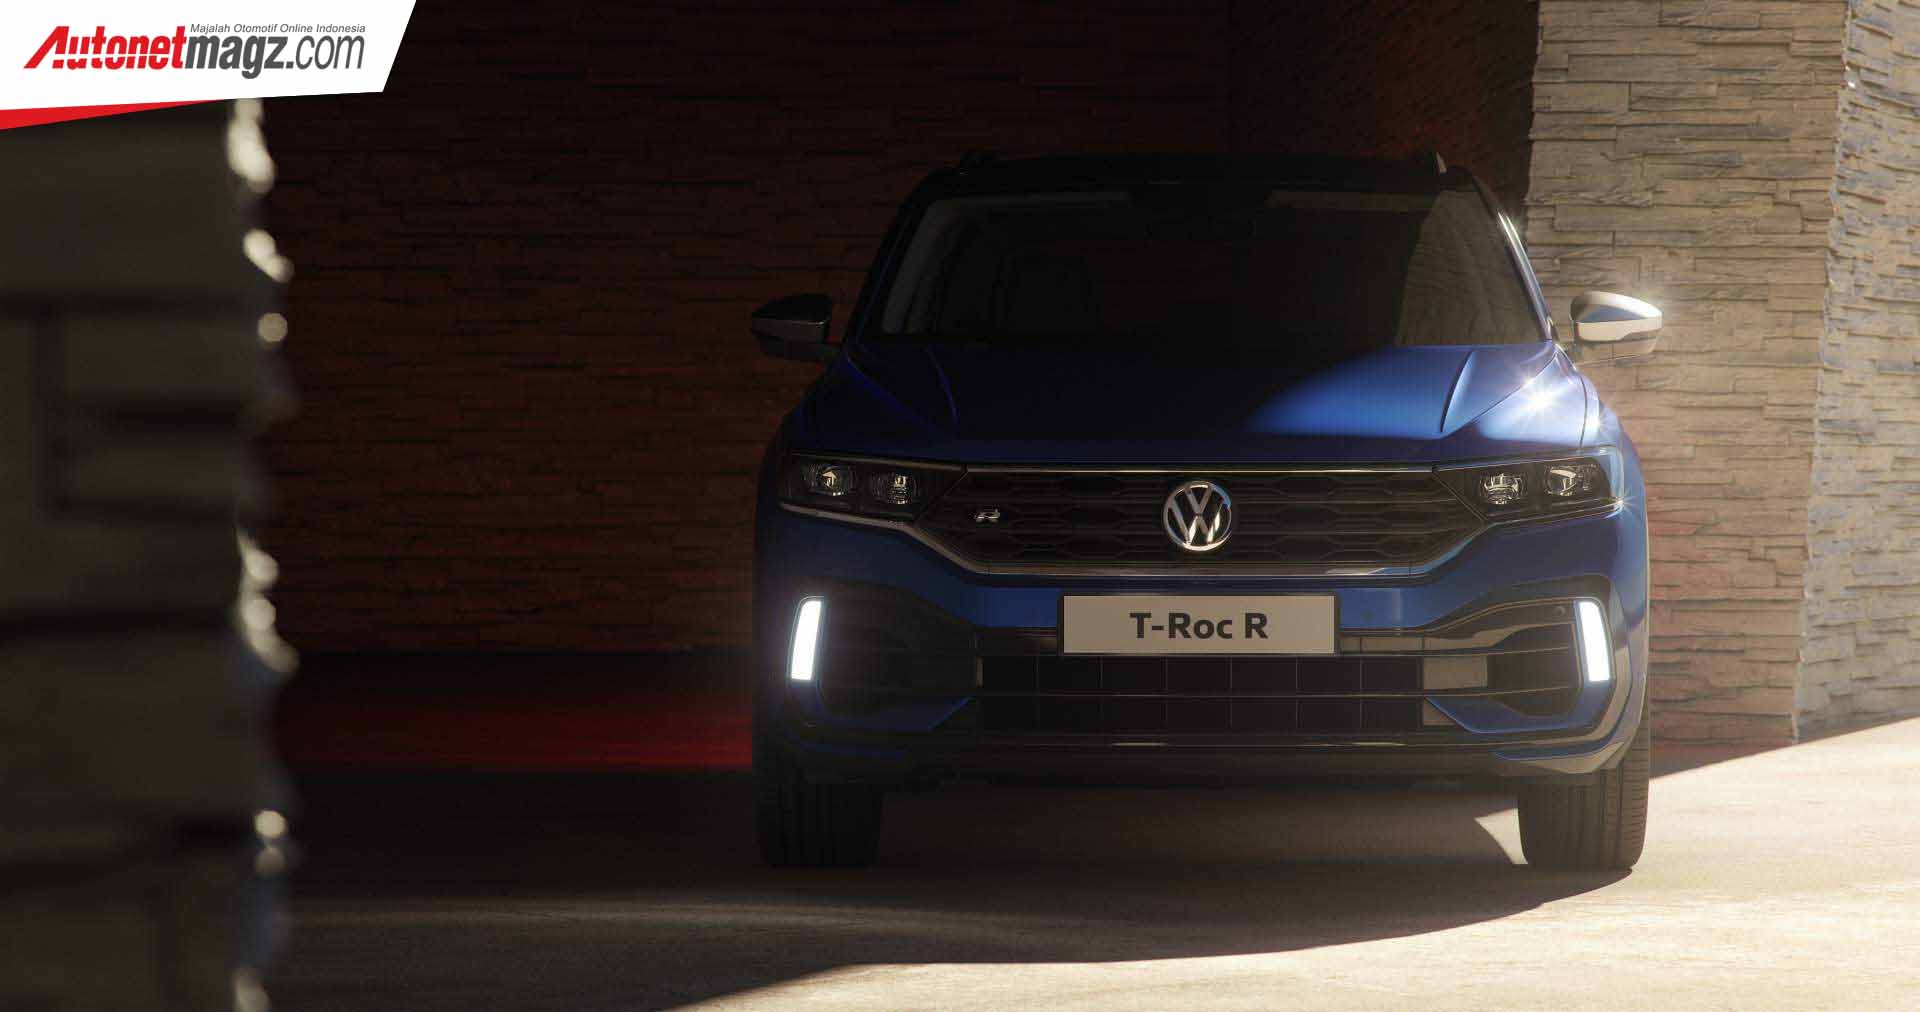 Berita, Launching Volkswagen T-Roc R: Volkswagen T-Roc R : Compact SUV Dengan Akselerasi 4,9 Detik!